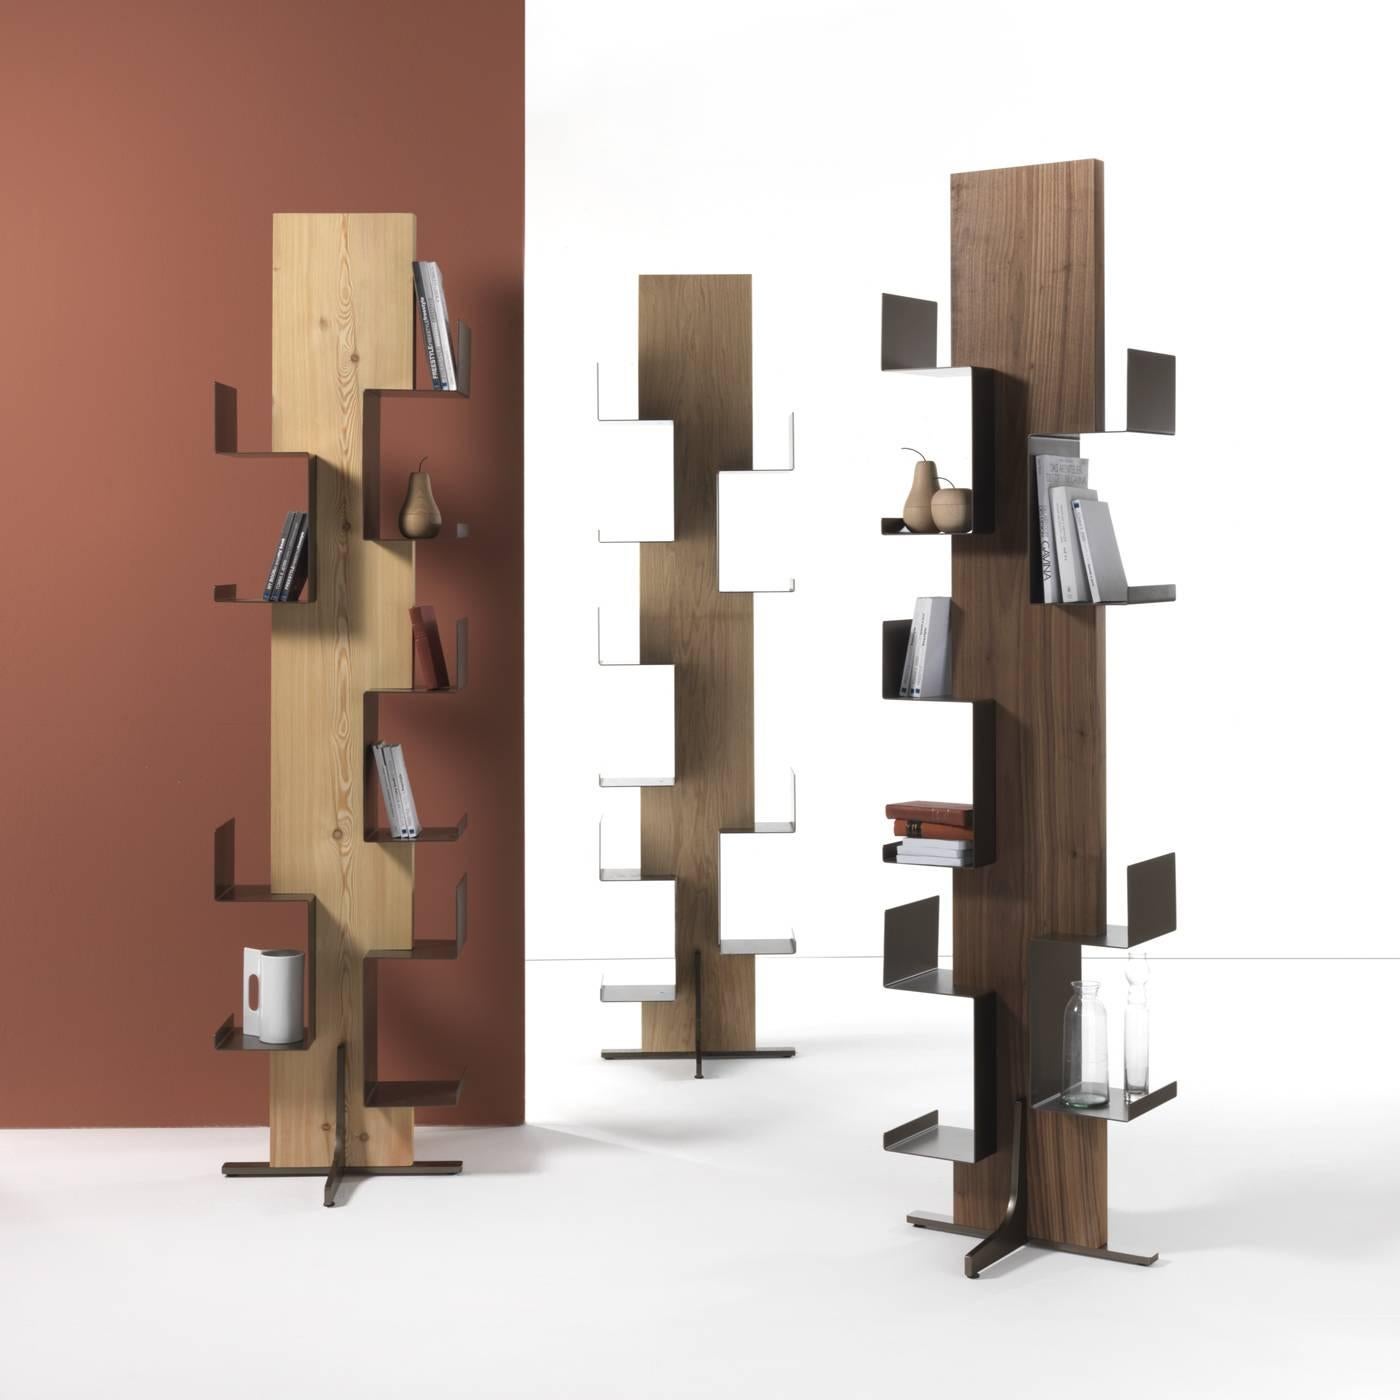 Cette étonnante TOTEM peut être utilisée pour exposer des objets et des livres et présente la fusion parfaite de deux matériaux : le bois massif de mélèze façonné de la structure et les étagères en fer avec une finition bronze. Cette pièce est